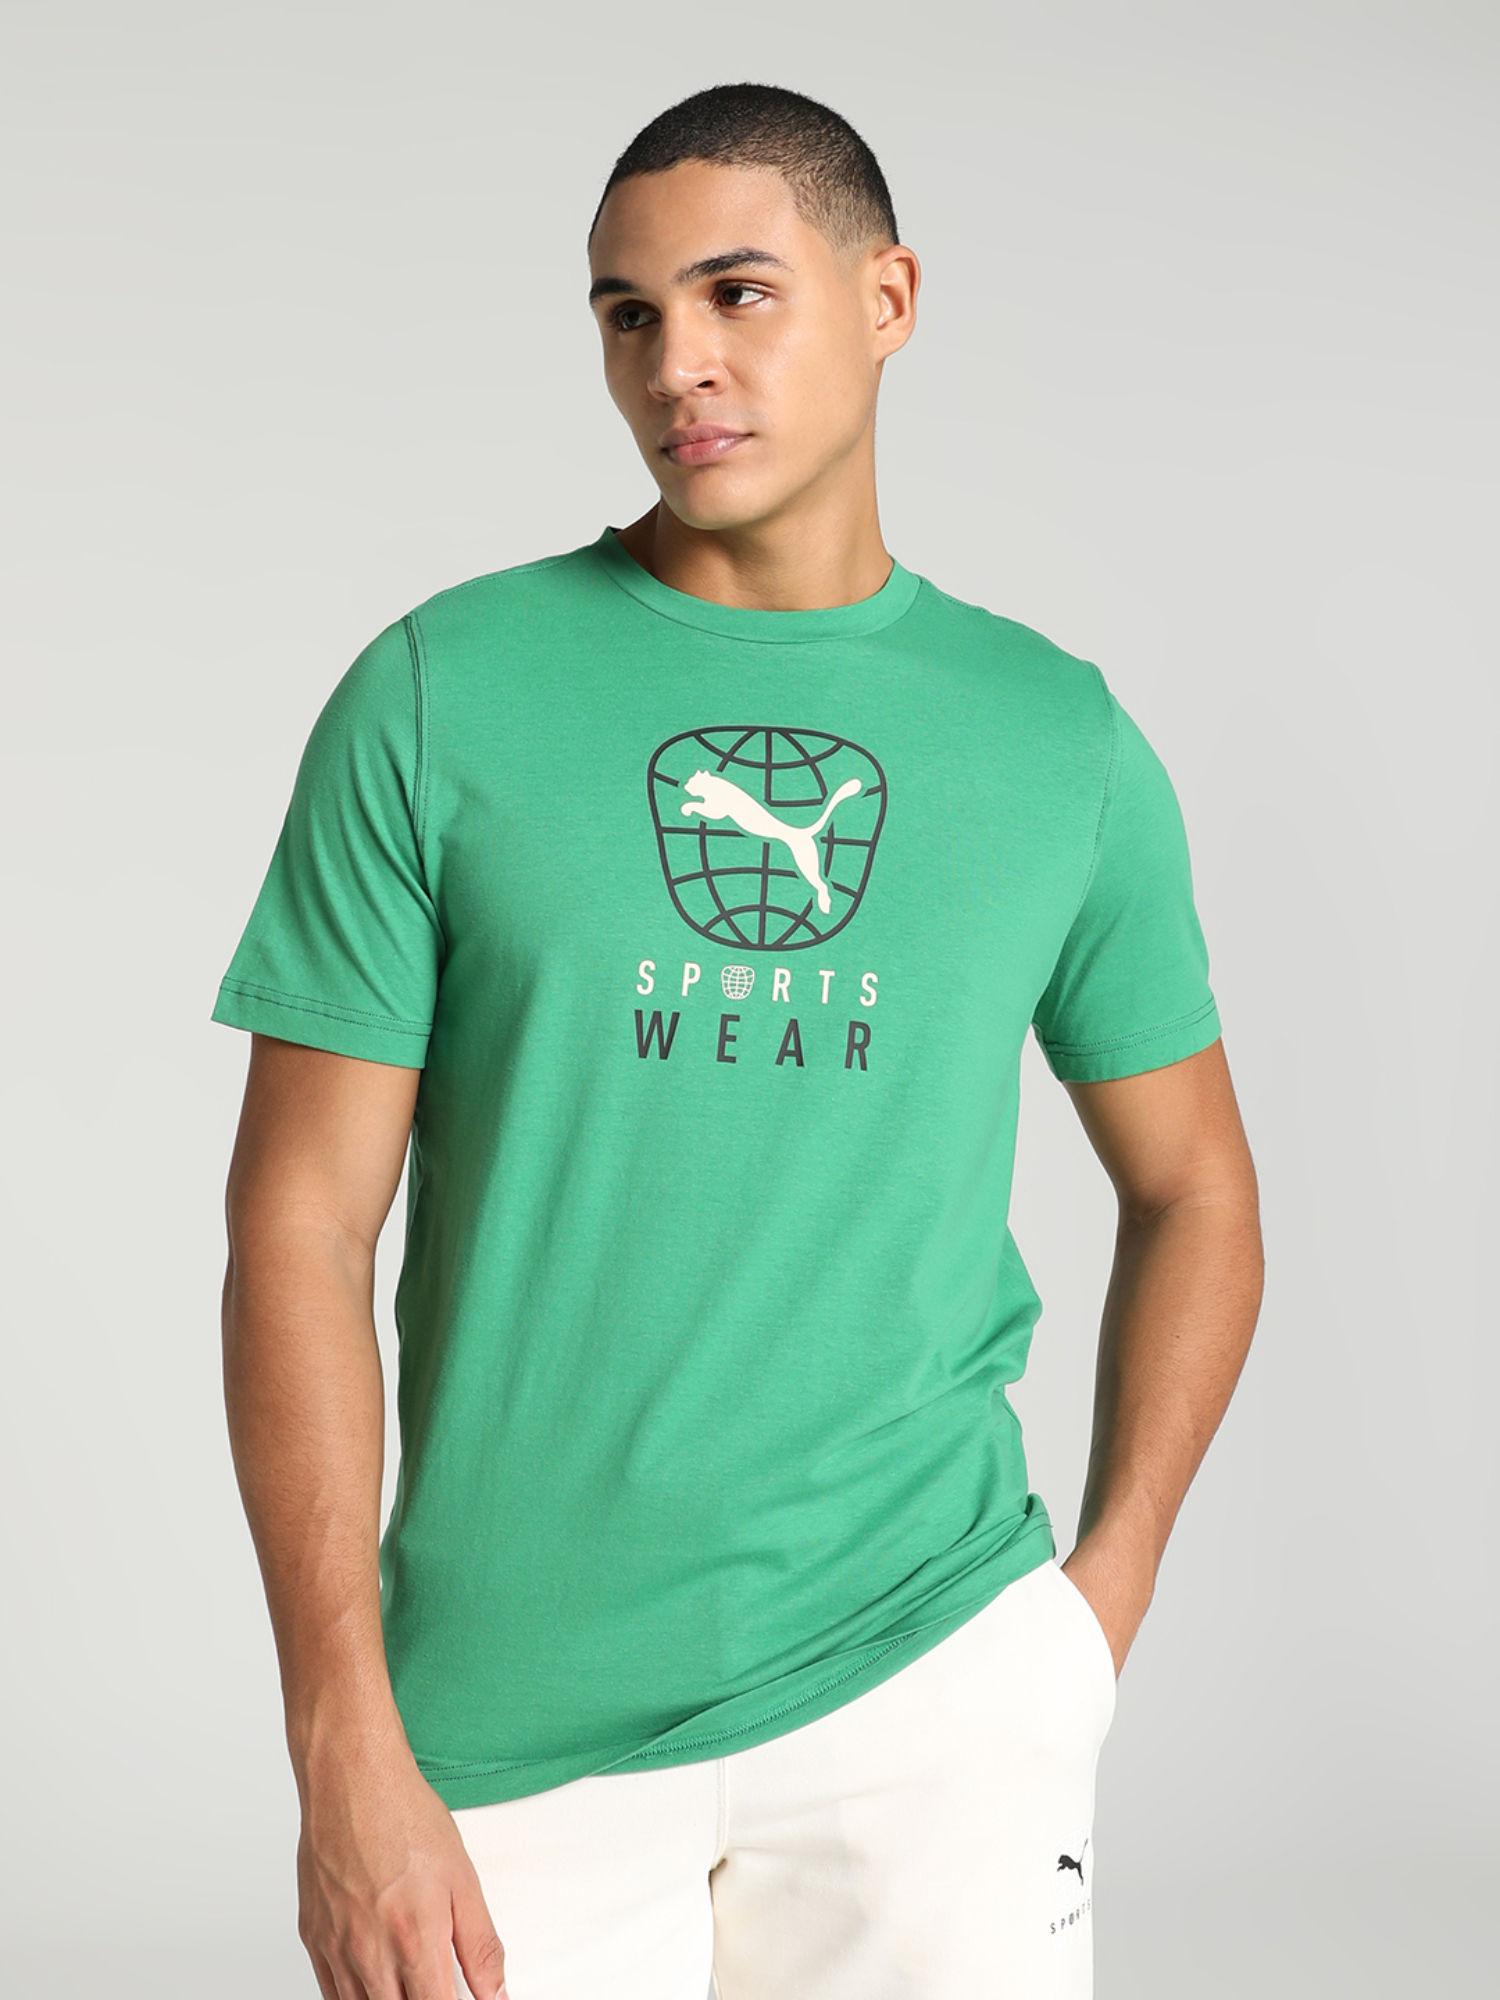 BETTER SPORTSWEAR Mens Green T-Shirt